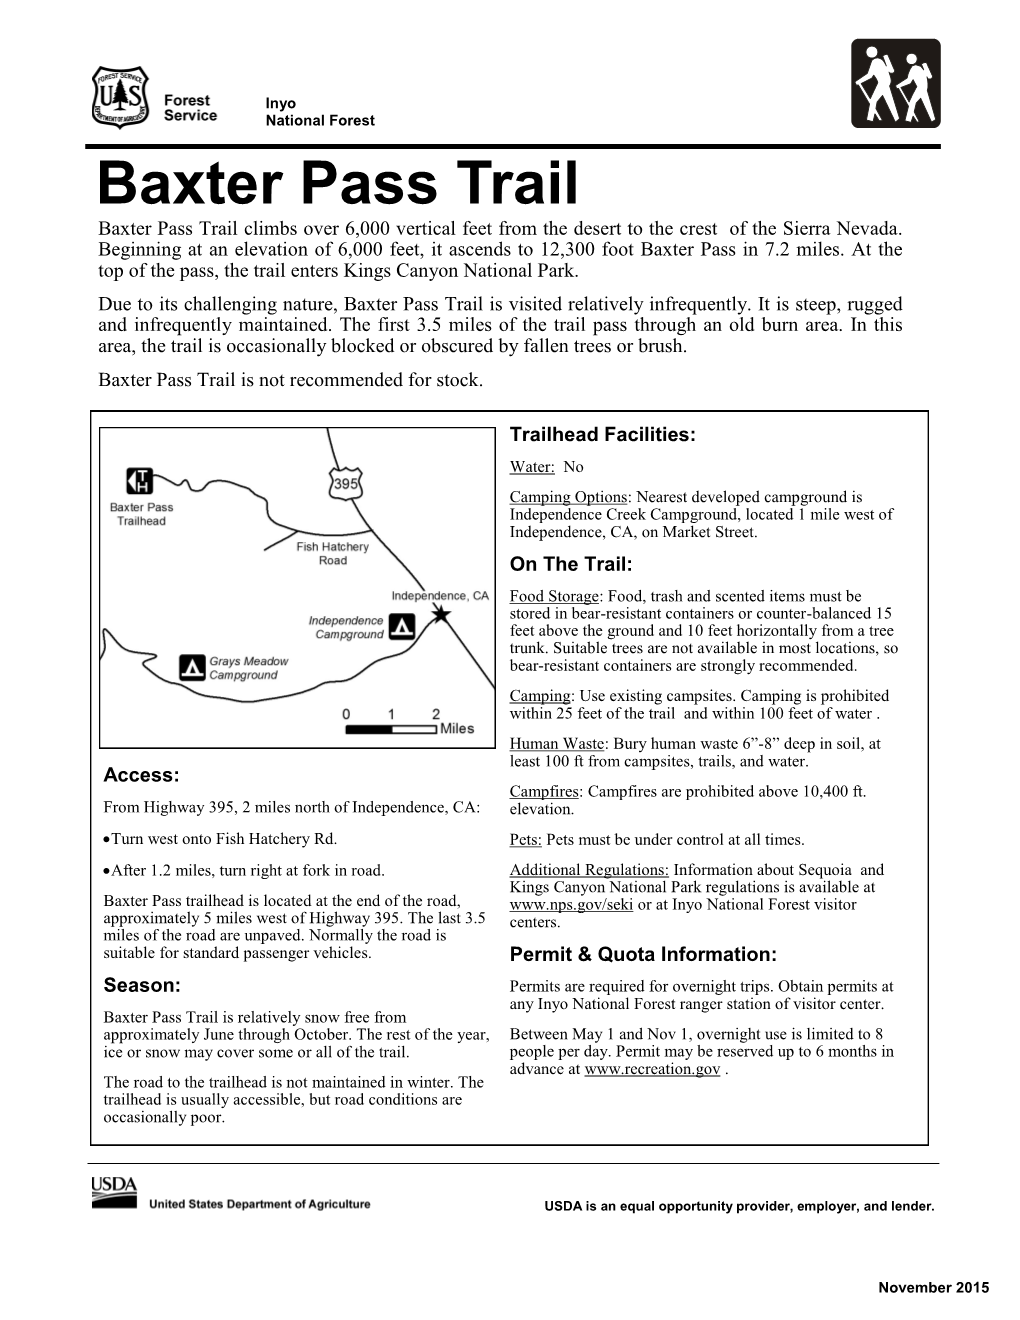 Hiking Baxter Pass Trail